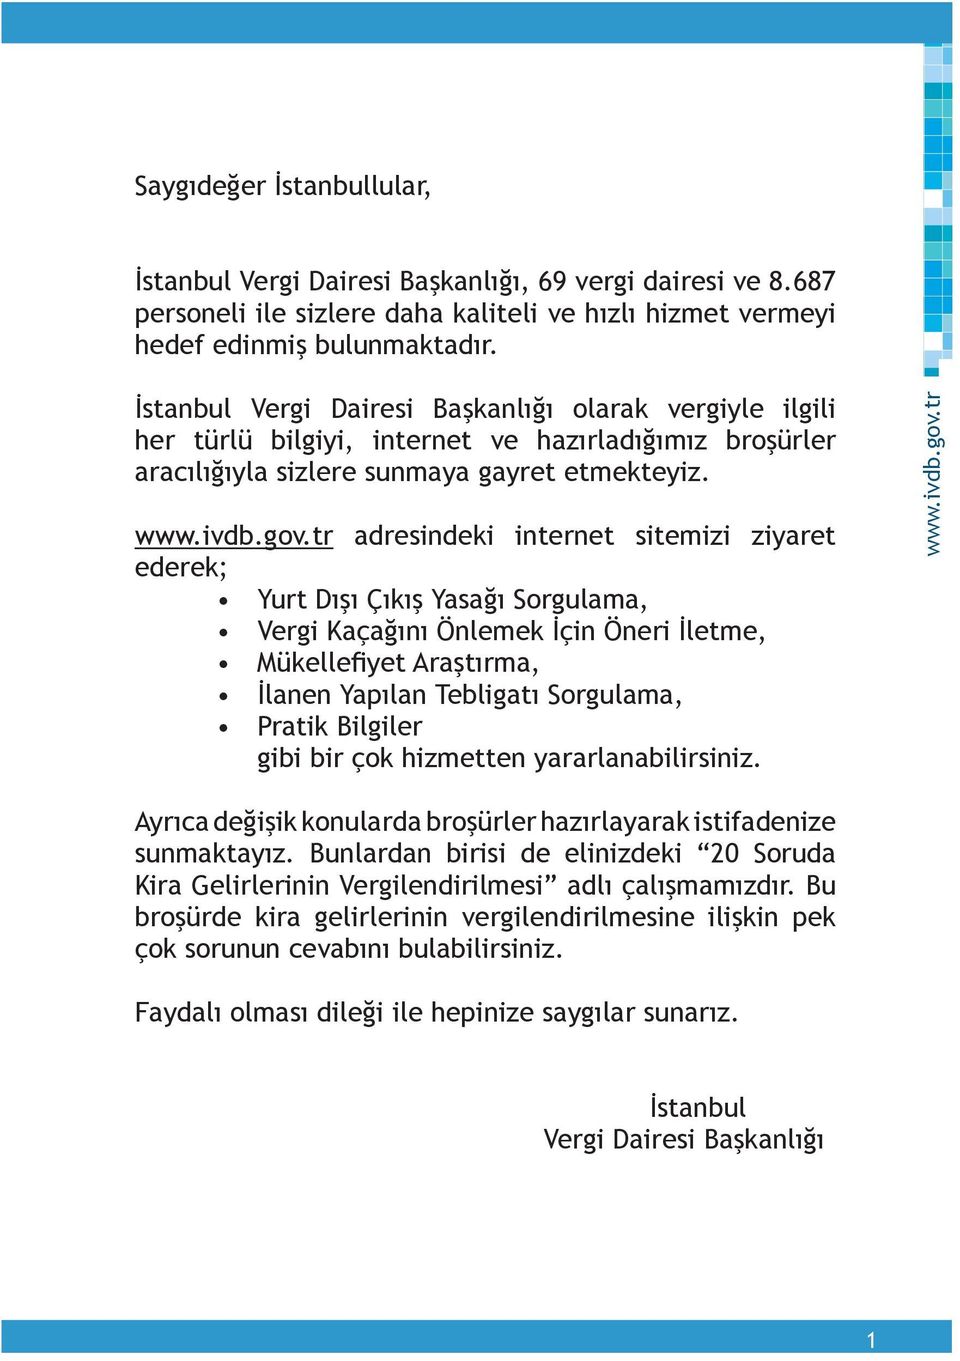 İstanbul Vergi Dairesi Başkanlığı olarak vergiyle ilgili her türlü bilgiyi, internet ve hazırladığımız broşürler aracılığıyla sizlere sunmaya gayret etmekteyiz.